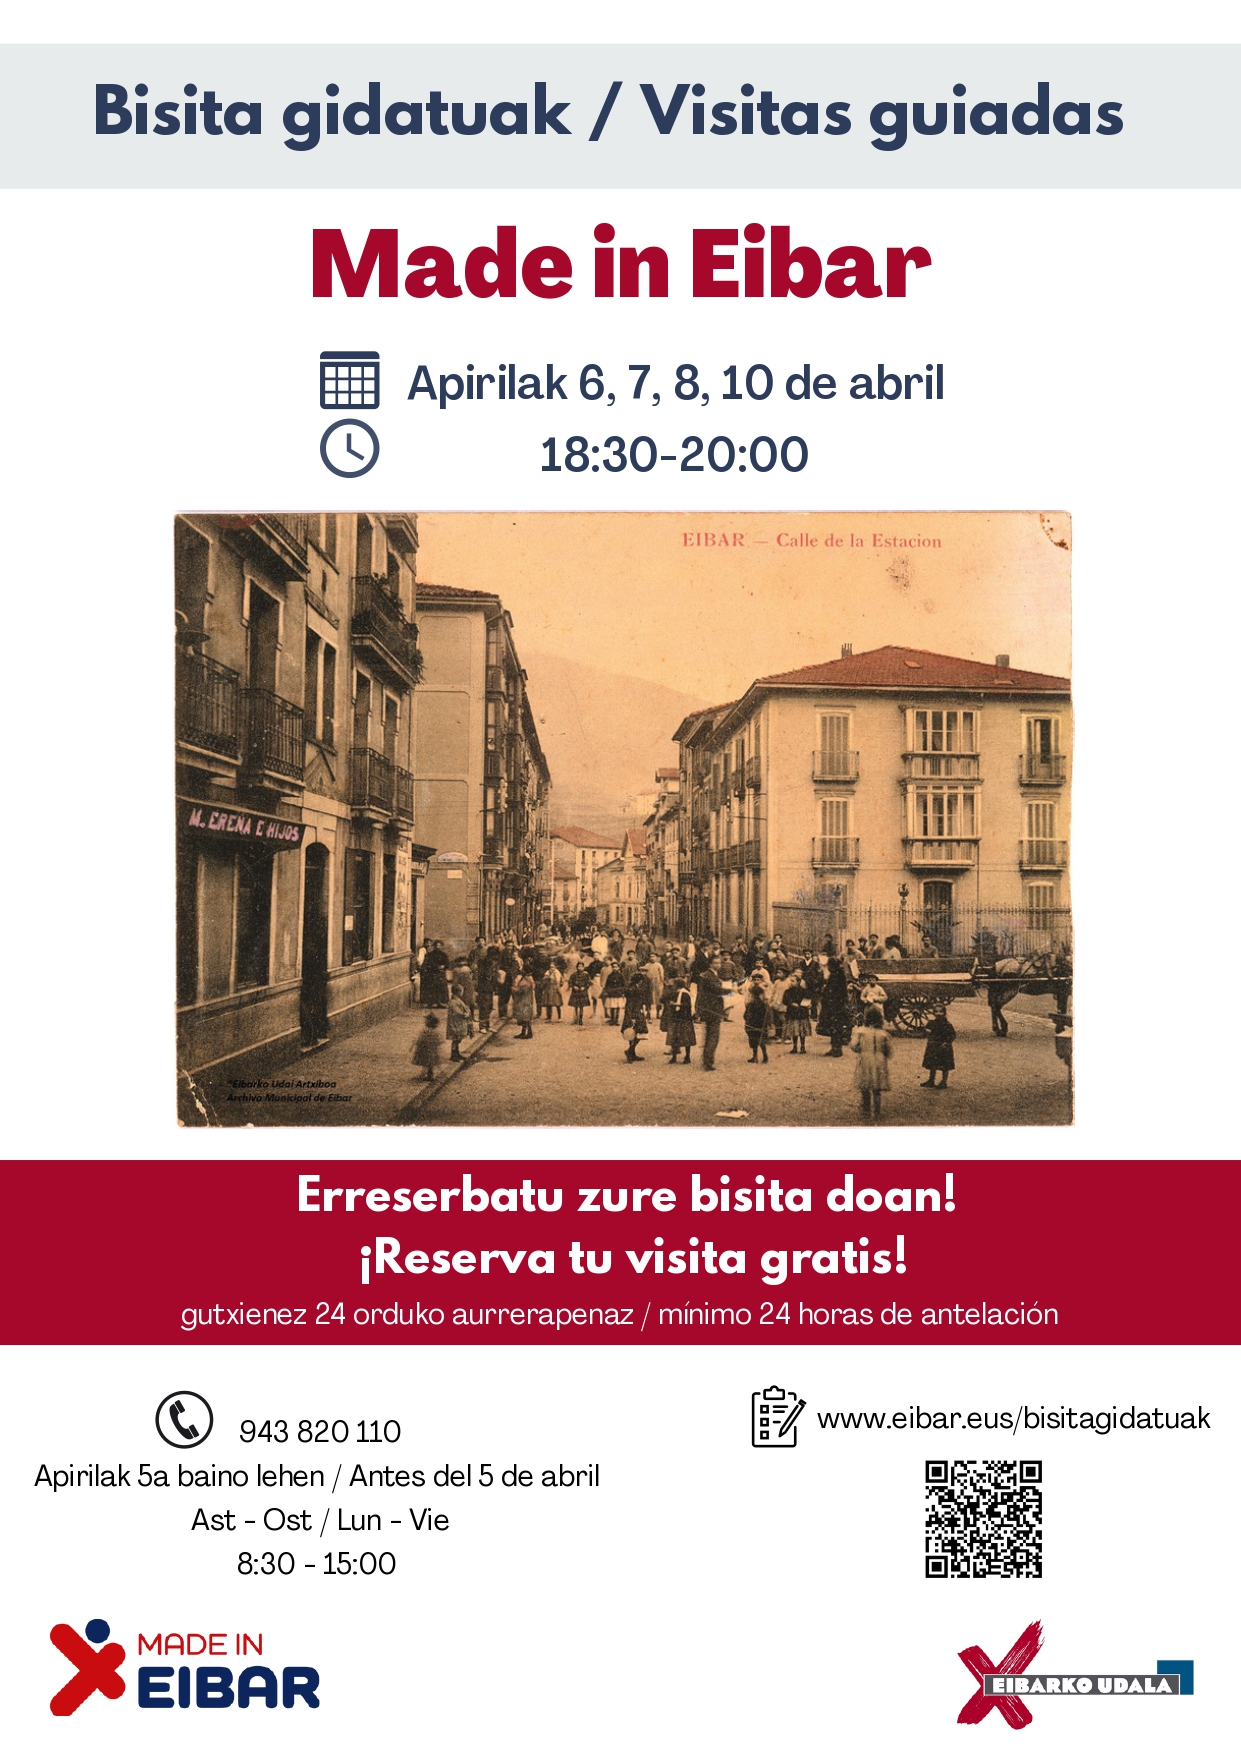 El Ayuntamiento organiza para esta Semana Santa una nueva edición de visitas guiadas por Eibar para poner en valor la historia y el atractivo turístico de la ciudad